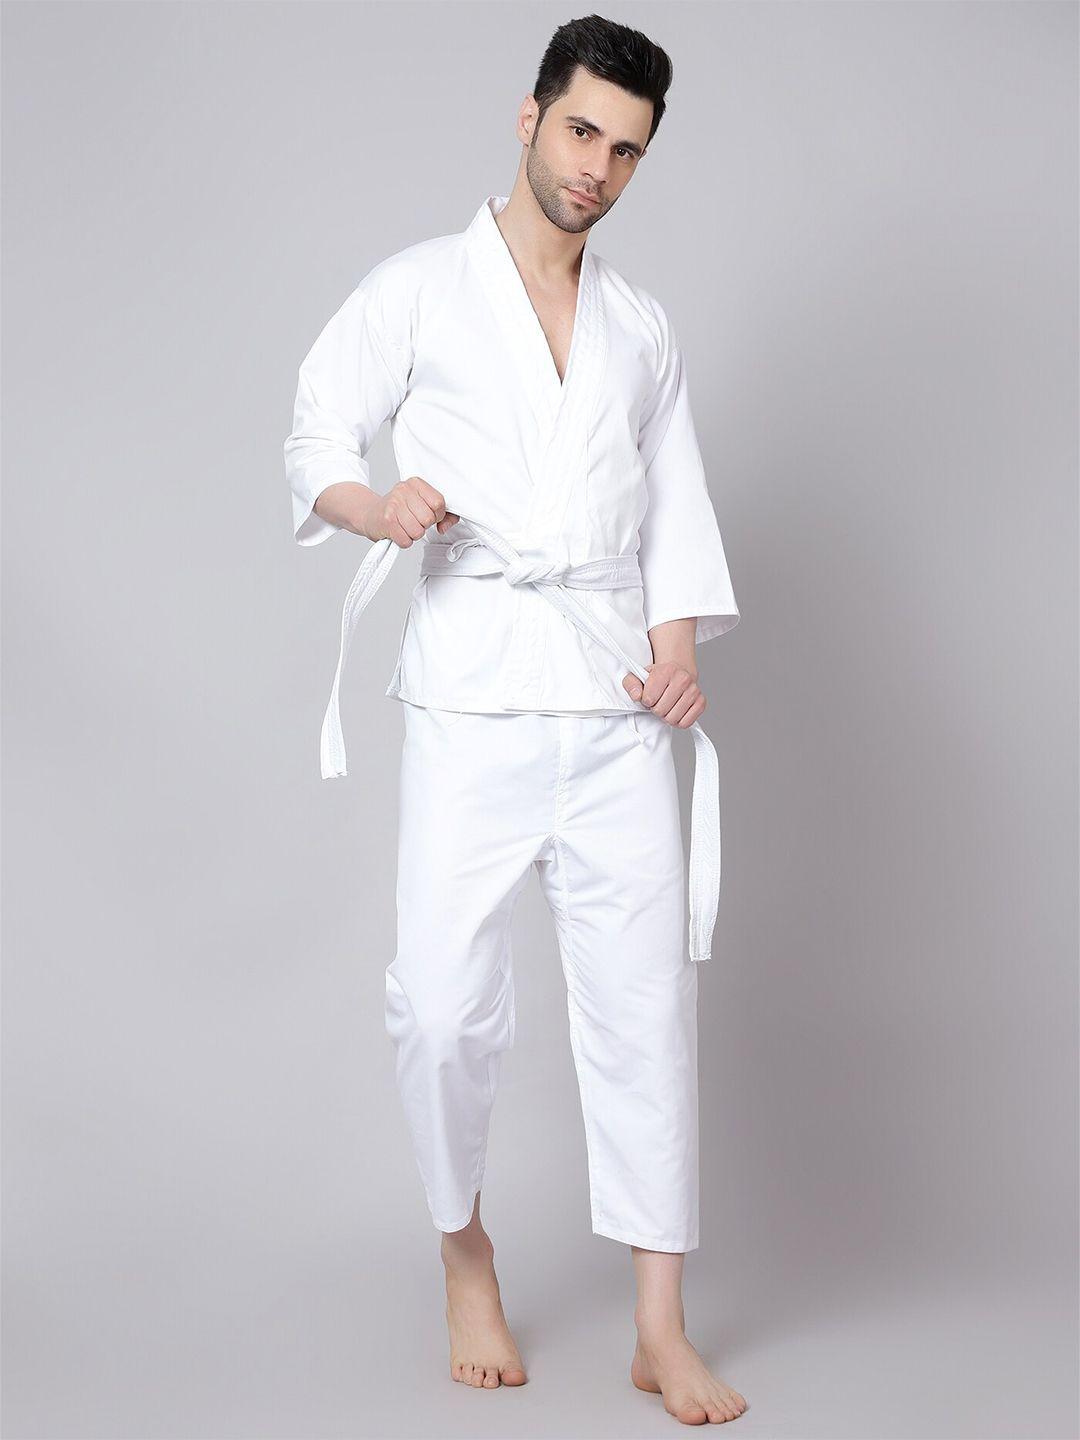 shiv naresh men karate kit with belt